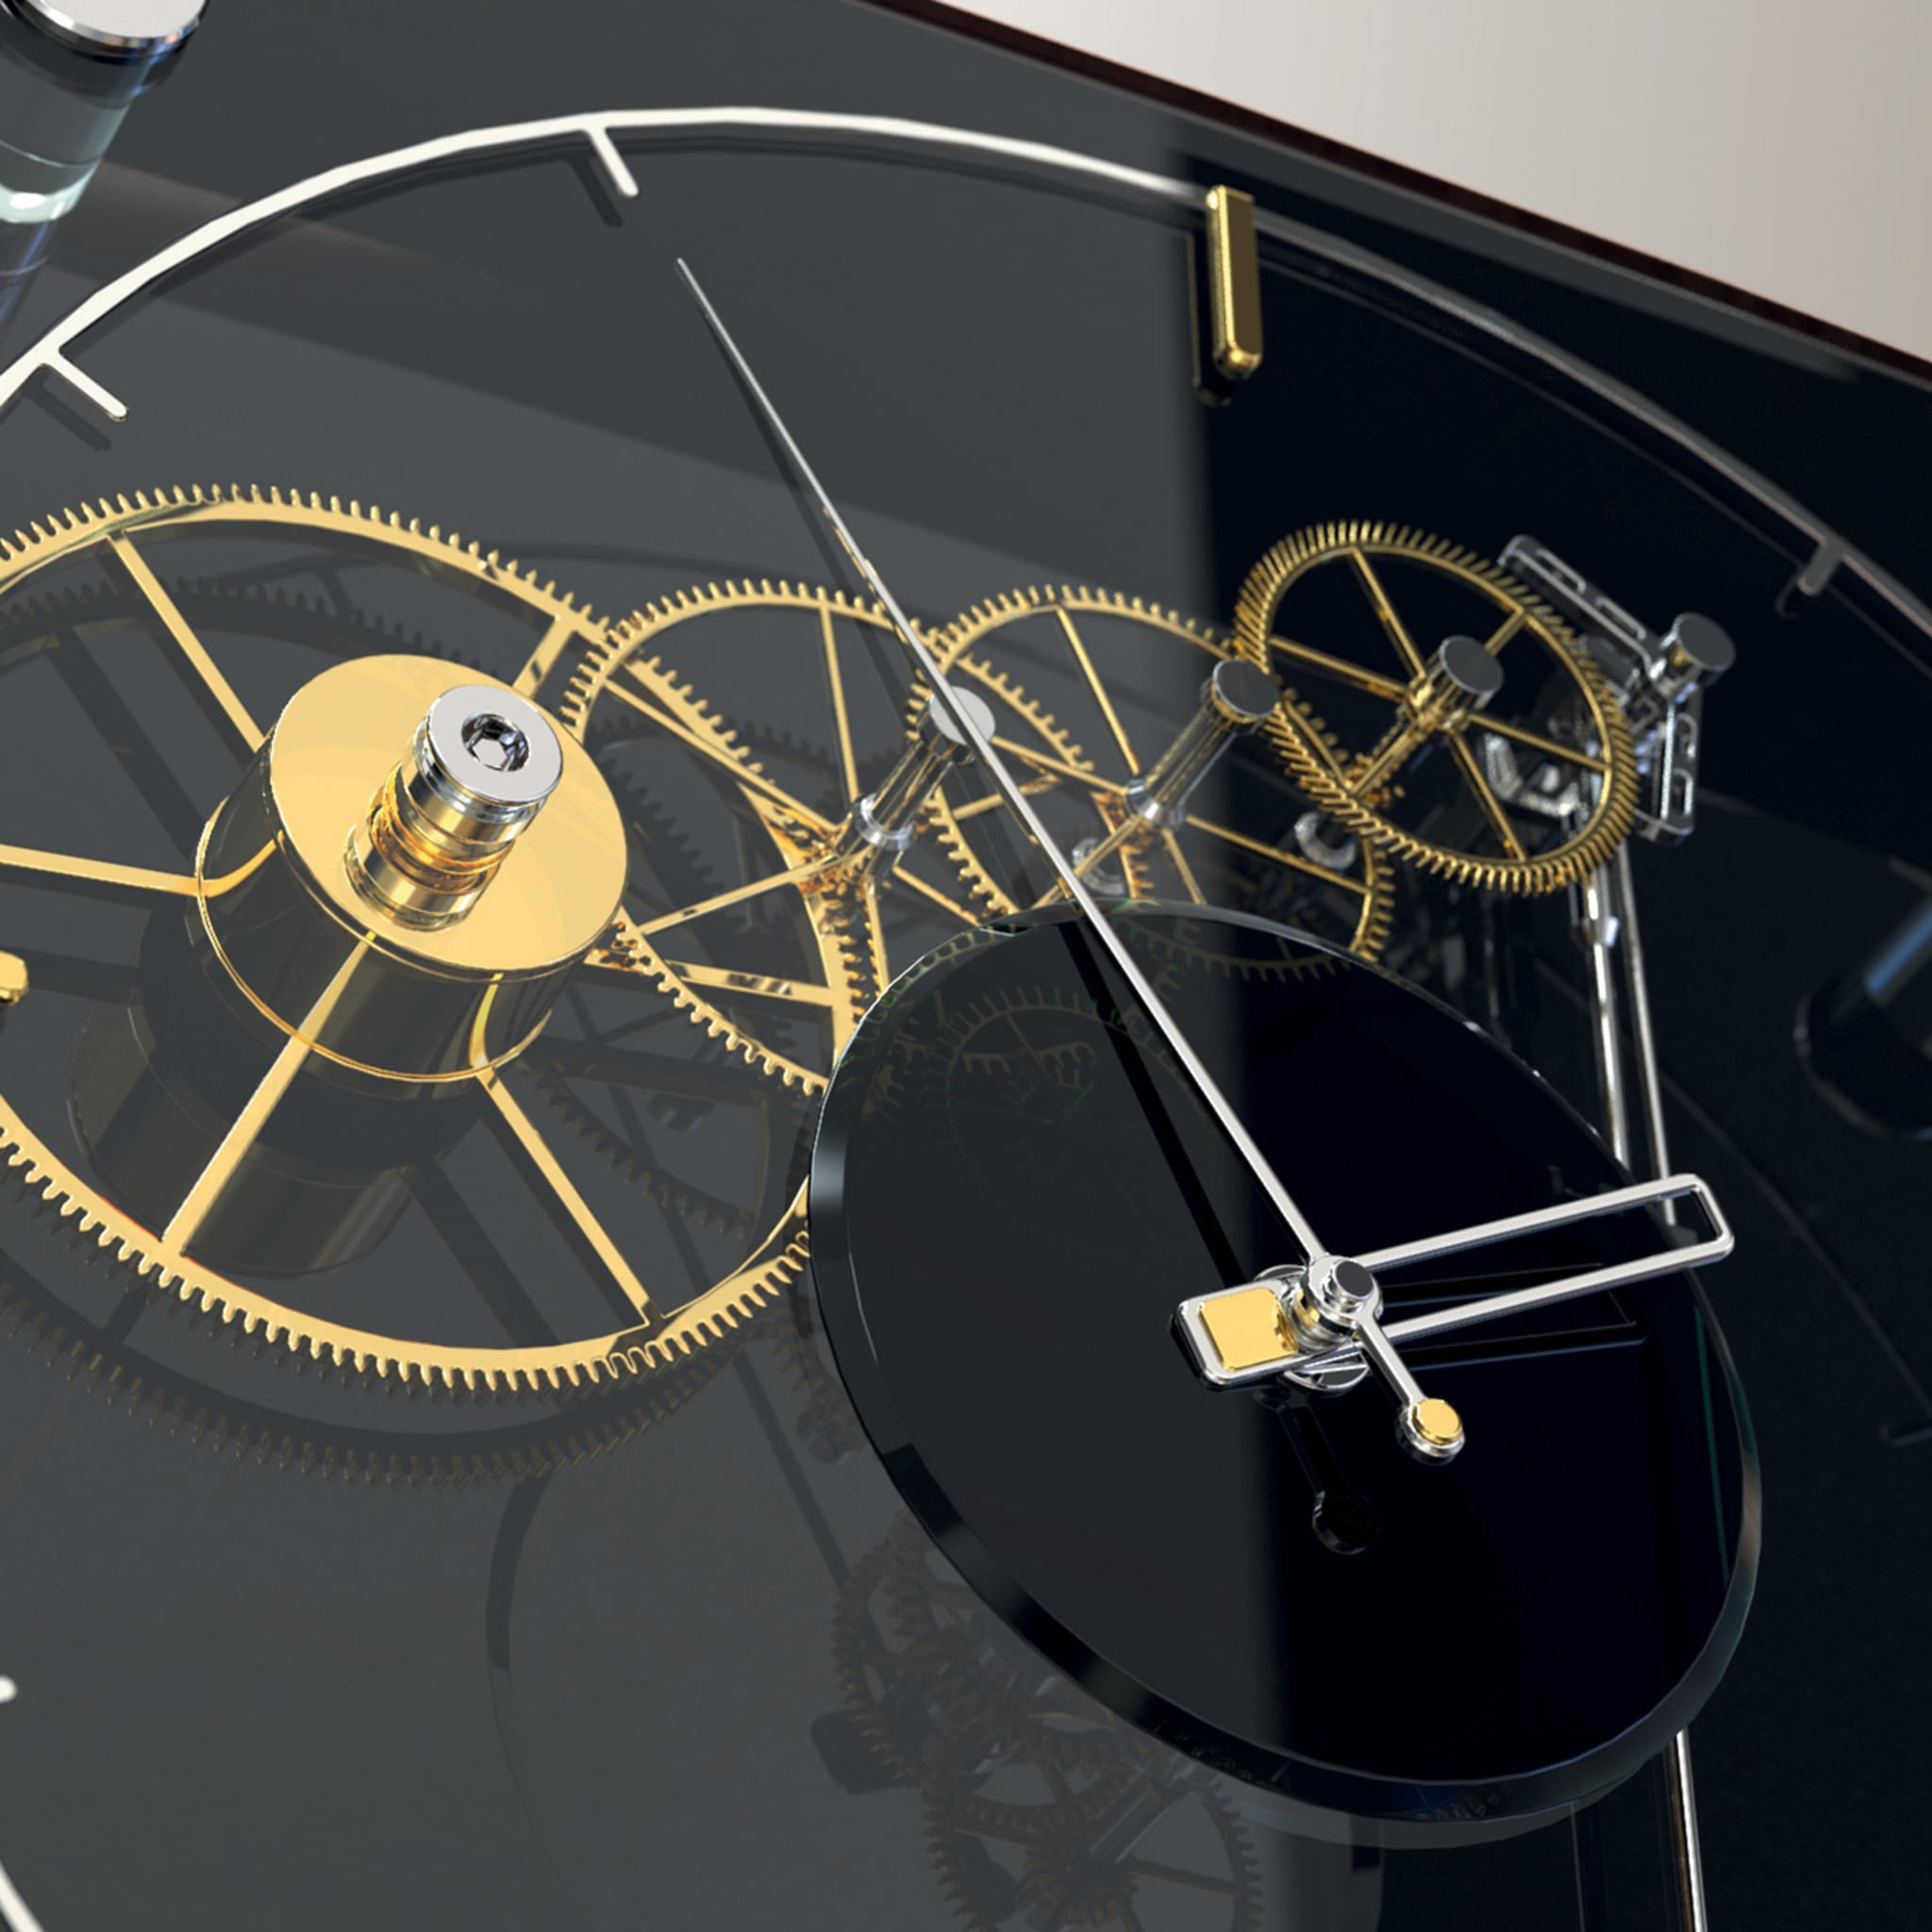 Vivo Clock by A. Rigotto, G. Barban & L. Di Giovanni - Alternative view 3